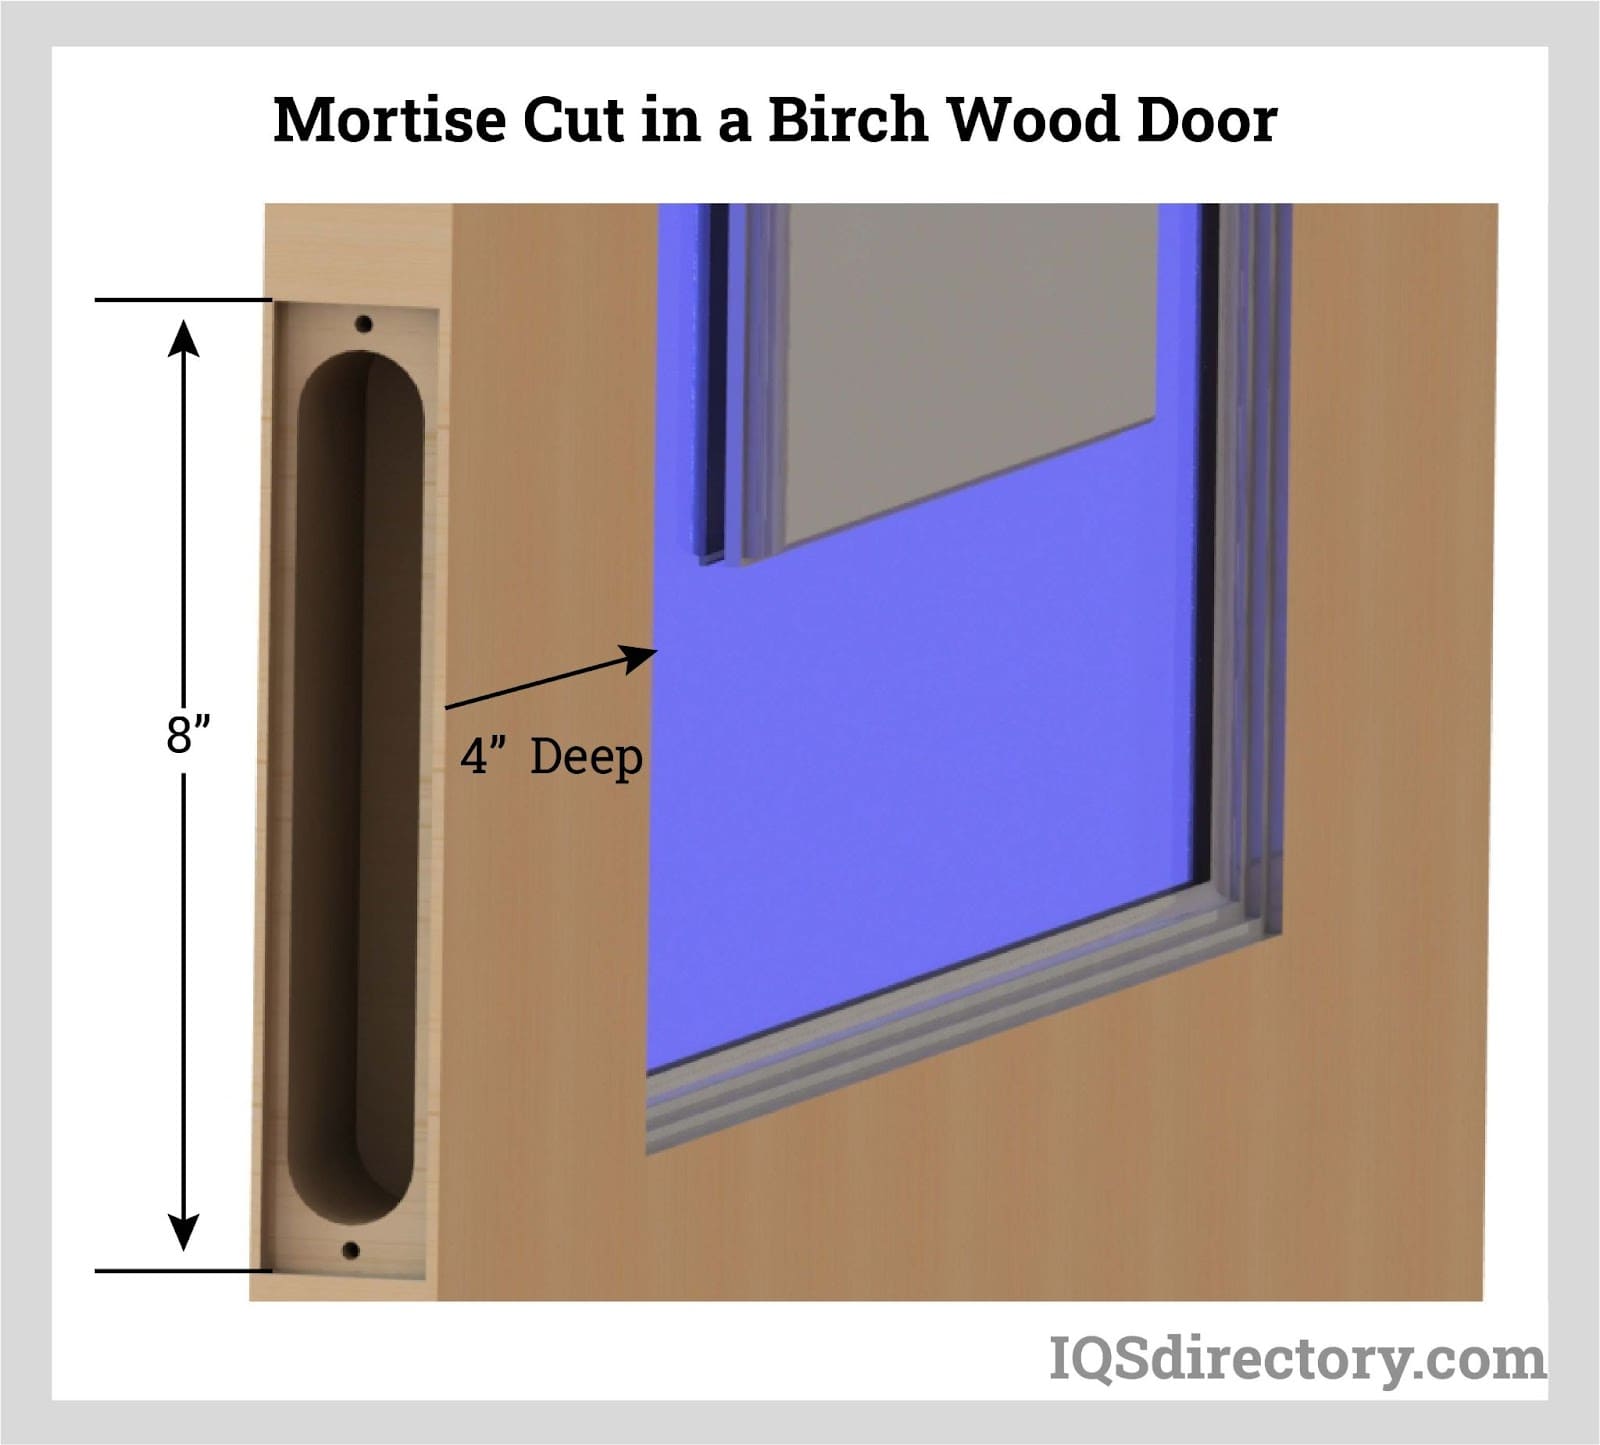 Mortise Cut in a Birch Wood Door